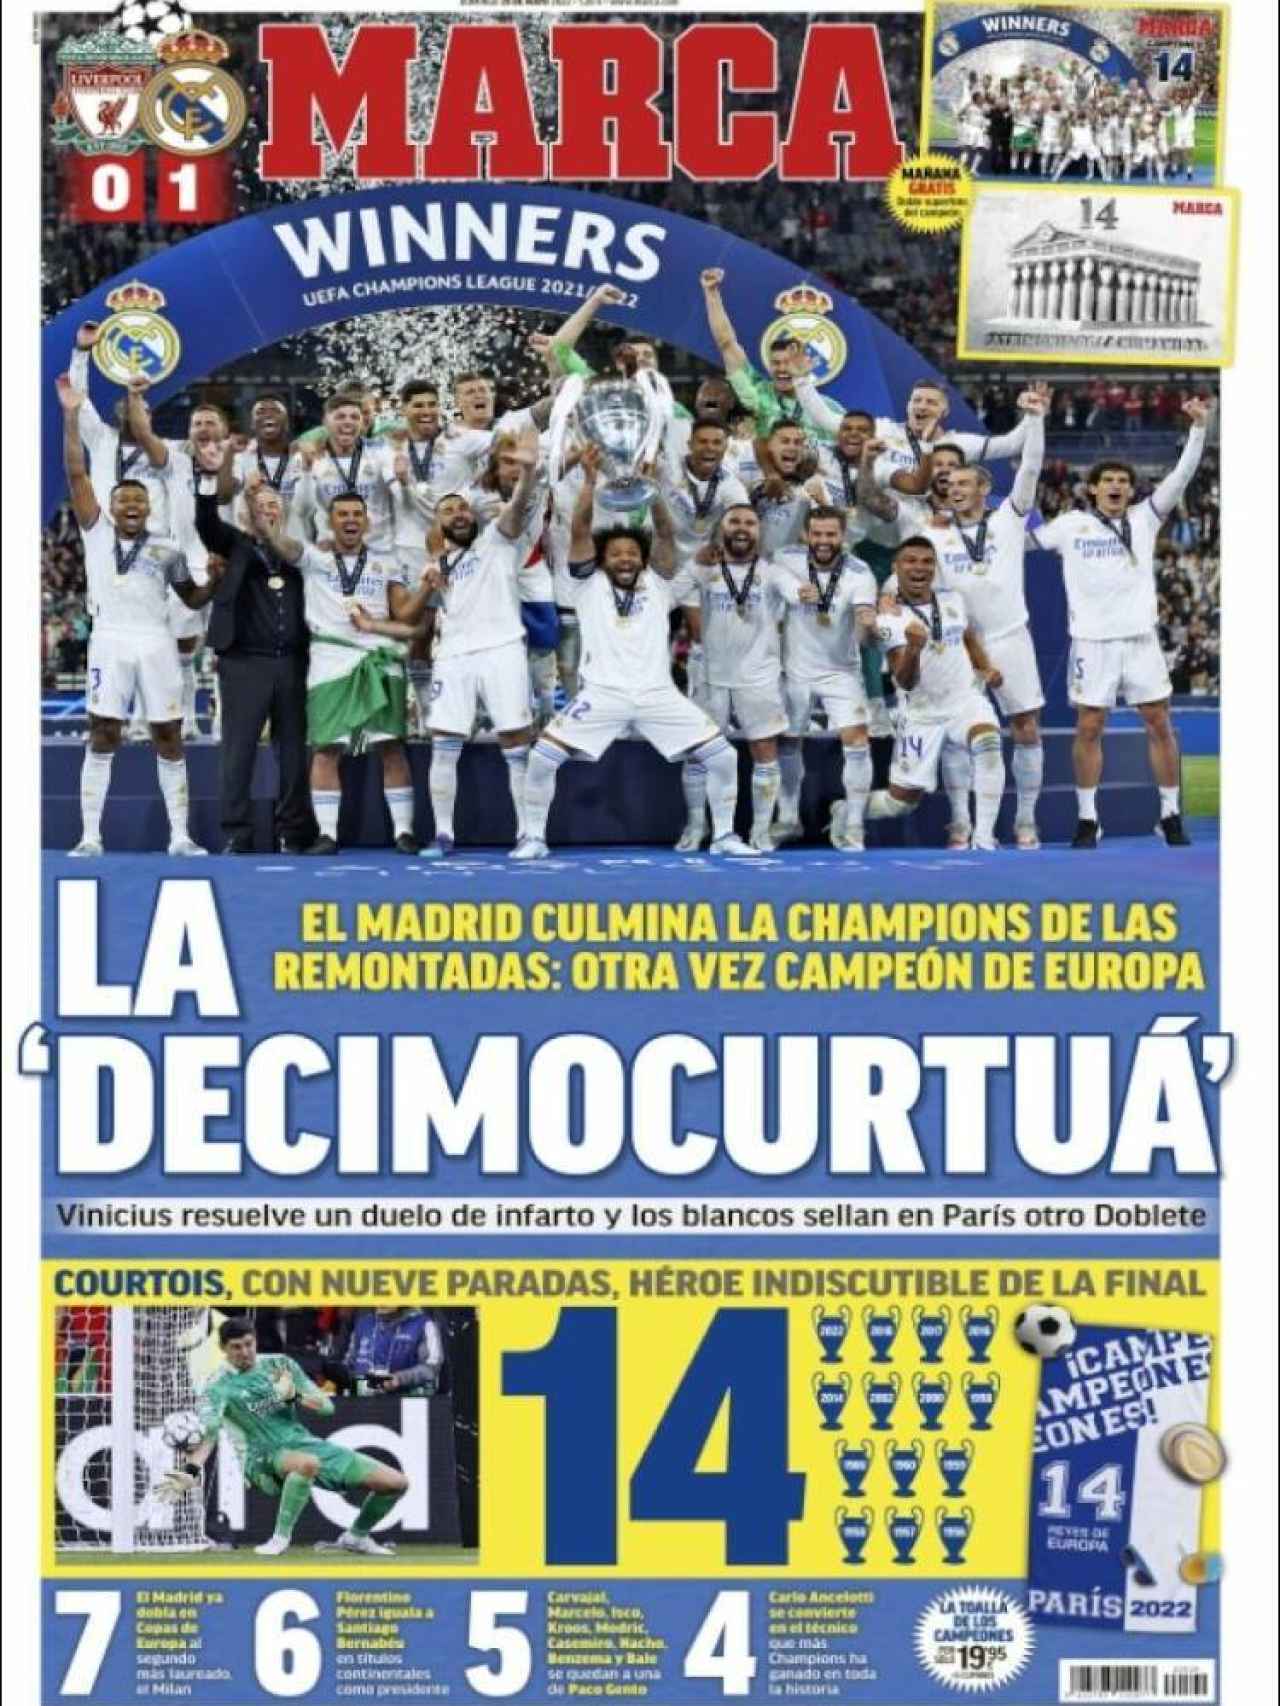 Las reacciones de la prensa deportiva a La Decimocuarta del Real Madrid:  Vinicius y Courtois, protagonistas